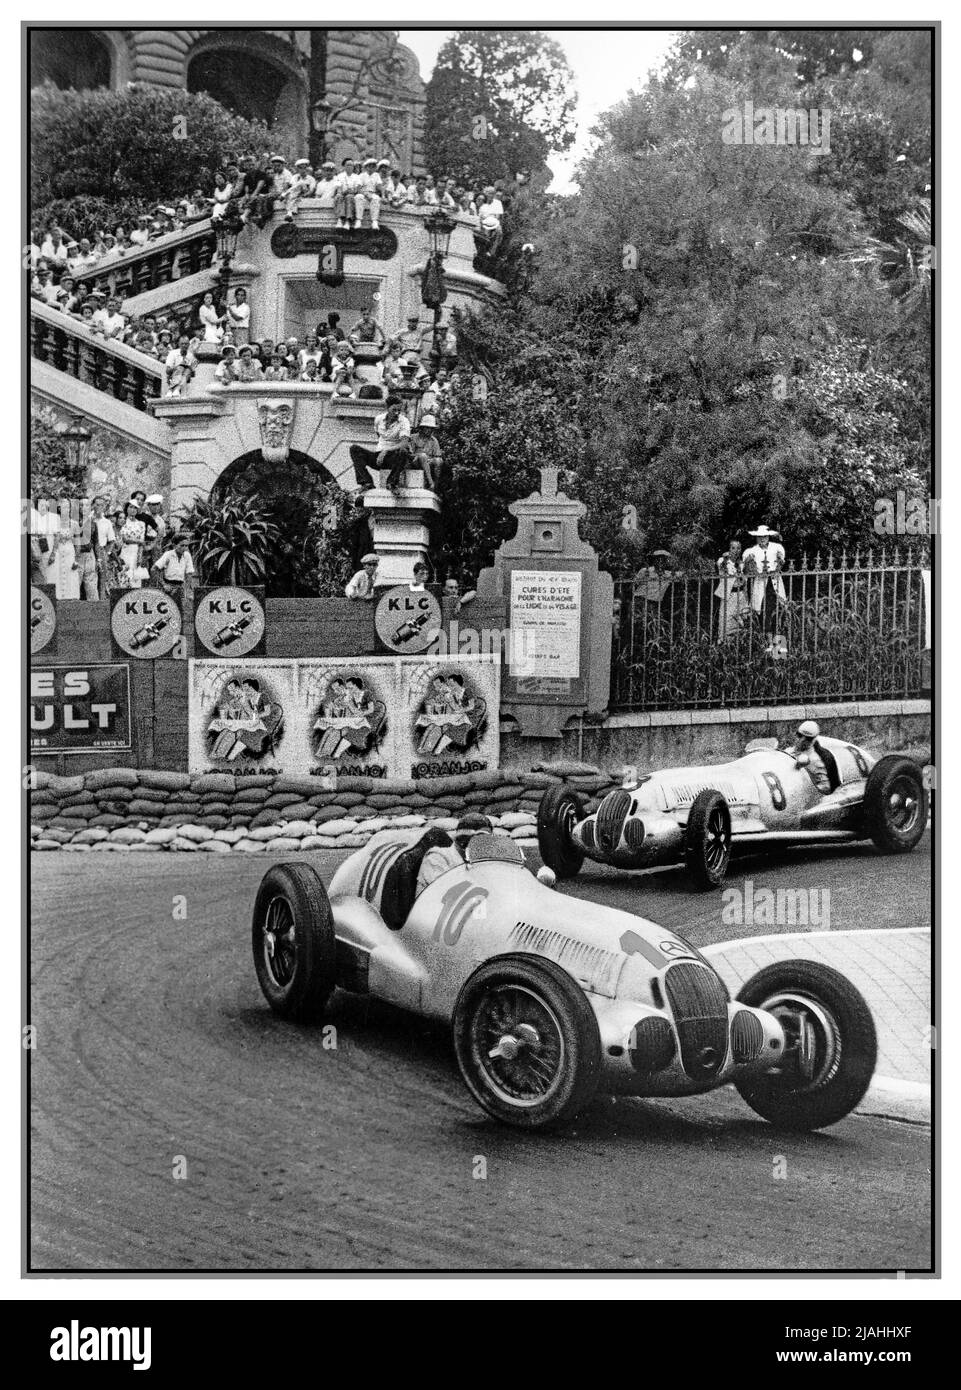 GRAND PRIX 1937 Mercedes 1 und 2 von MONACO Manfred von Brauchitsch, Sieger Rudy Caracciola 2. GP von Monaco 1937, fand am 8. August dieses Jahres statt. Loews Haarnadel. Diese Mercedes siver Pfeile waren zwei Runden vor dem 3. Platz Christian Kautz in einem weiteren Mercedes W125. Stockfoto